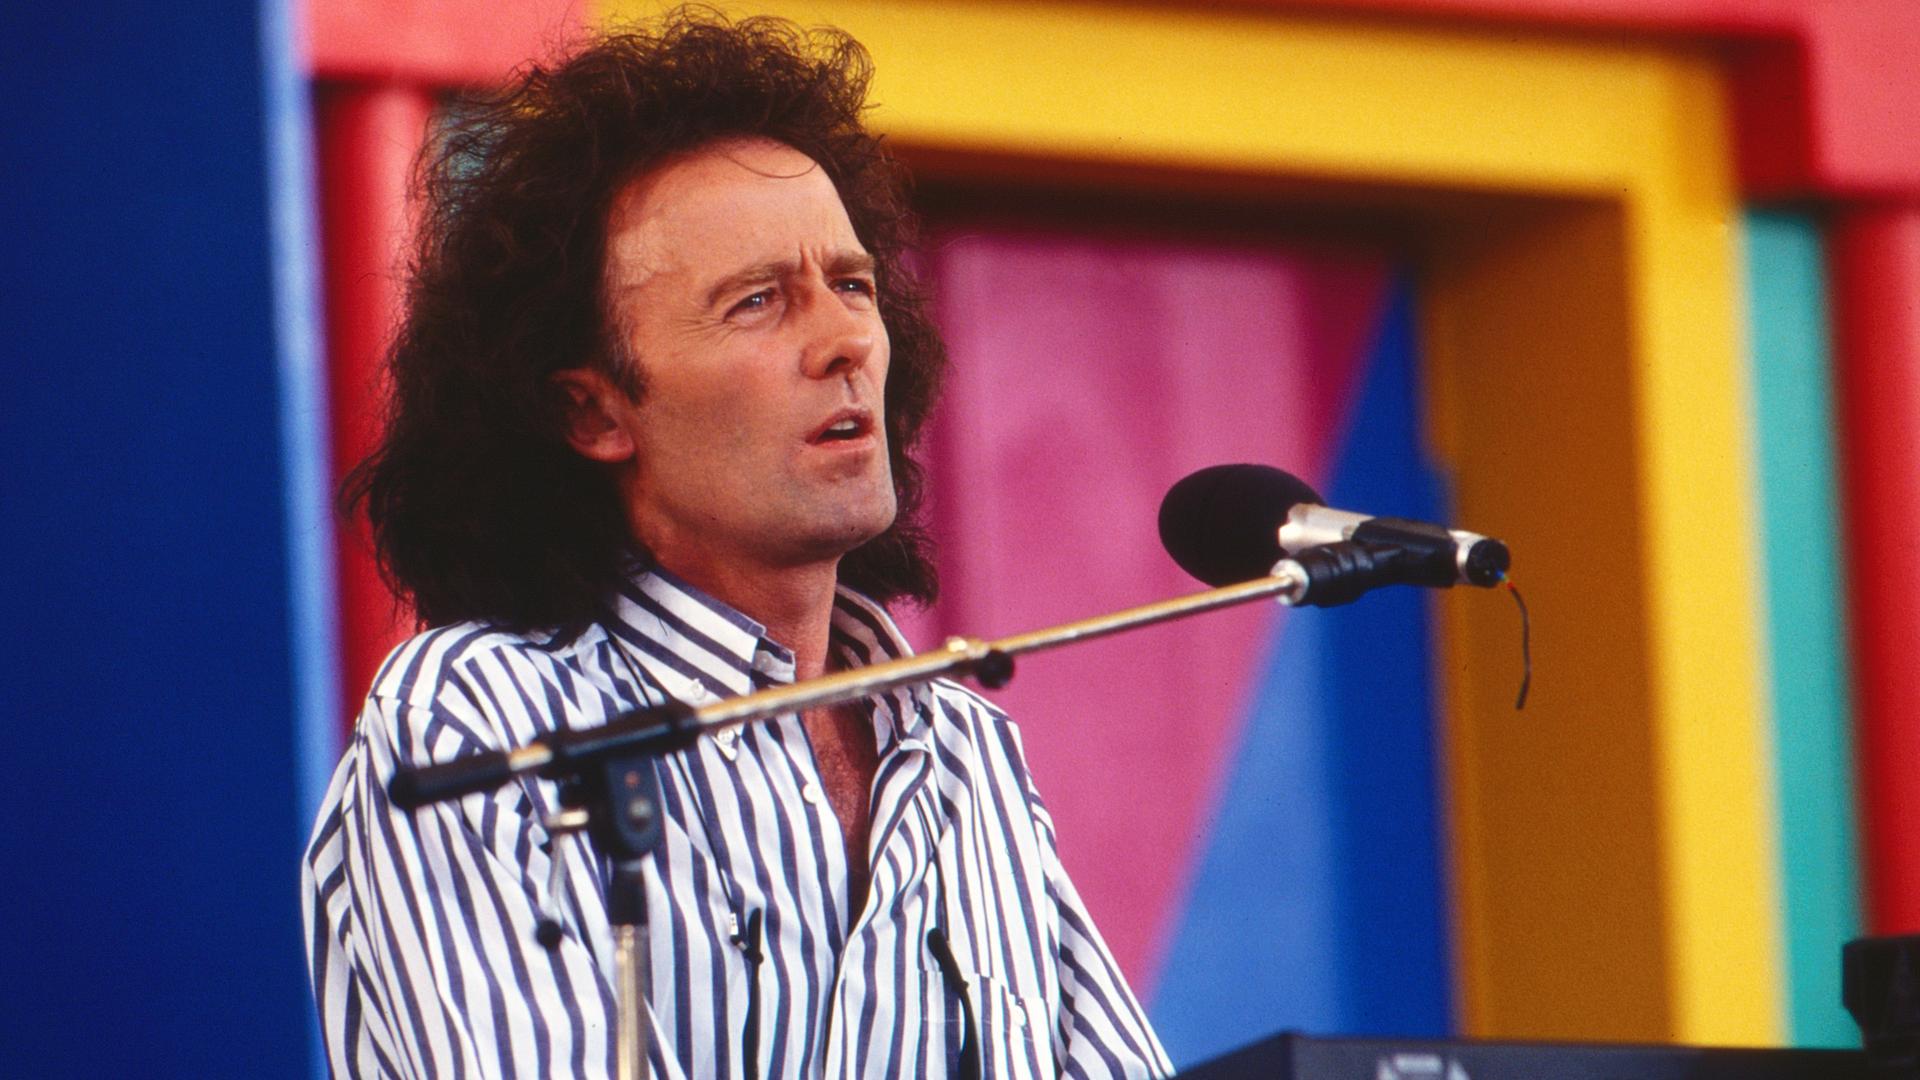 Gilbert O´Sullivan 1993 bei einem Konzert in Deutschland. Er trägt ein längsgestreiftes Hemd, die Haare trägt er schullterlang. 